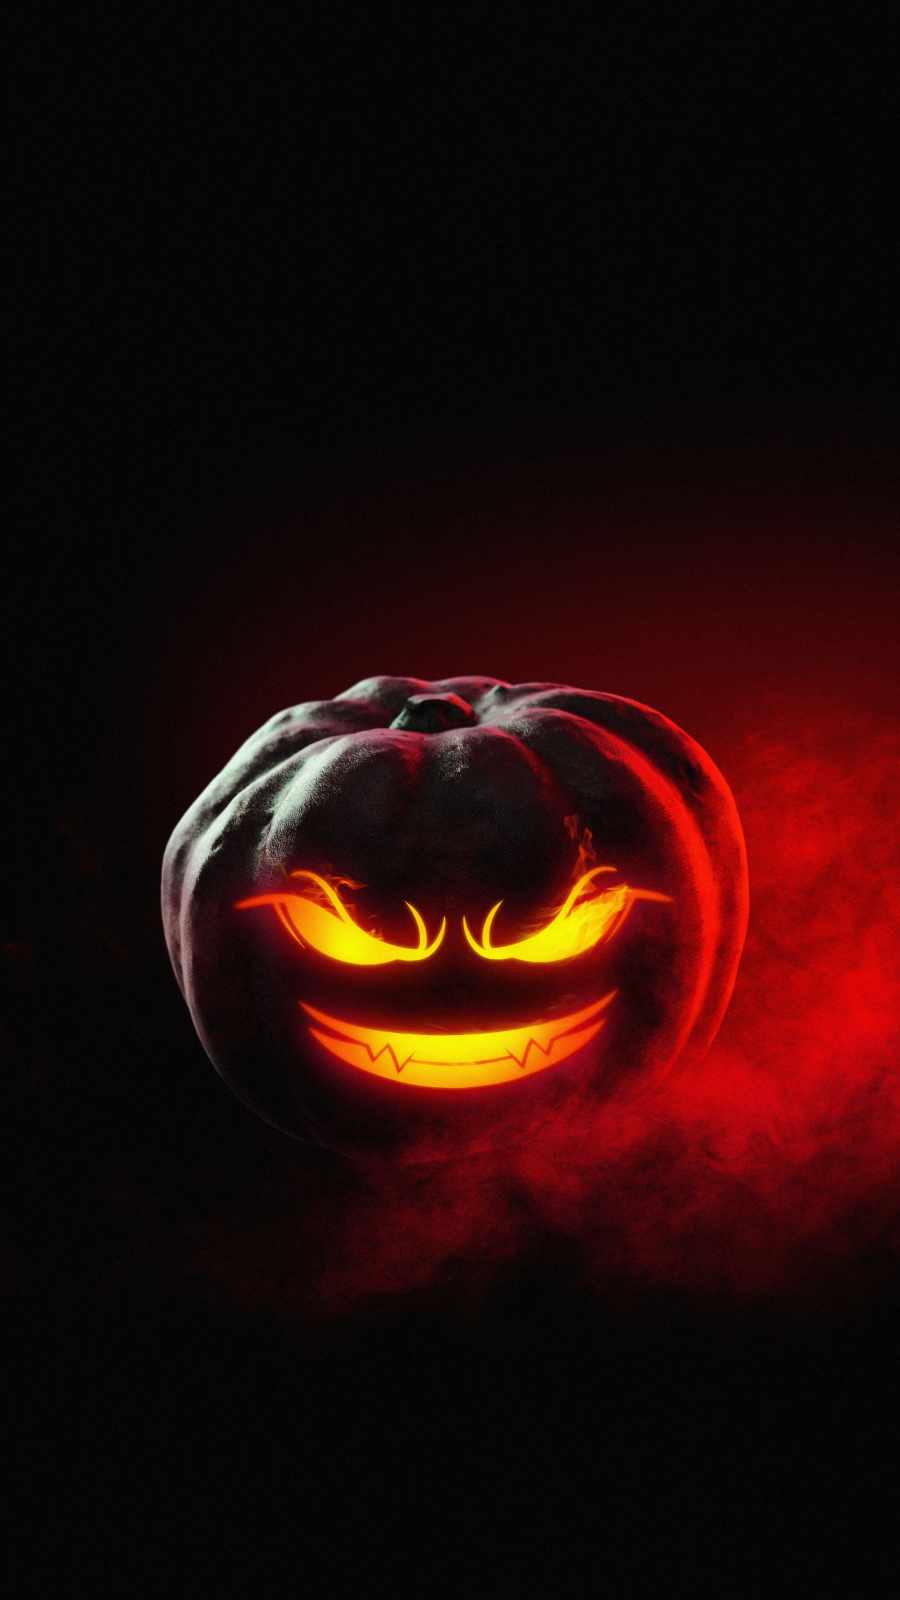 Pumpkin Evil Face iPhone Wallpaper